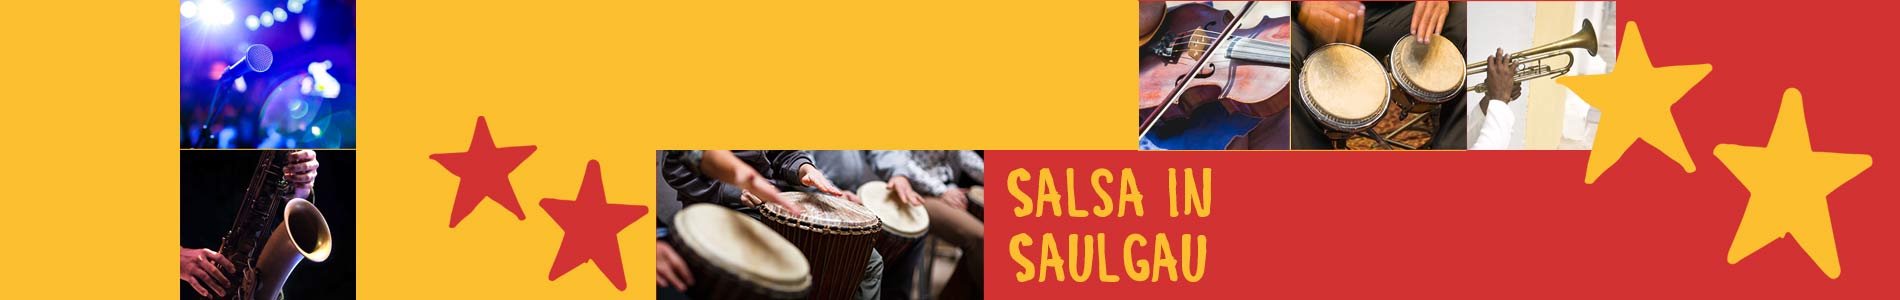 Salsa in Saulgau – Salsa lernen und tanzen, Tanzkurse, Partys, Veranstaltungen